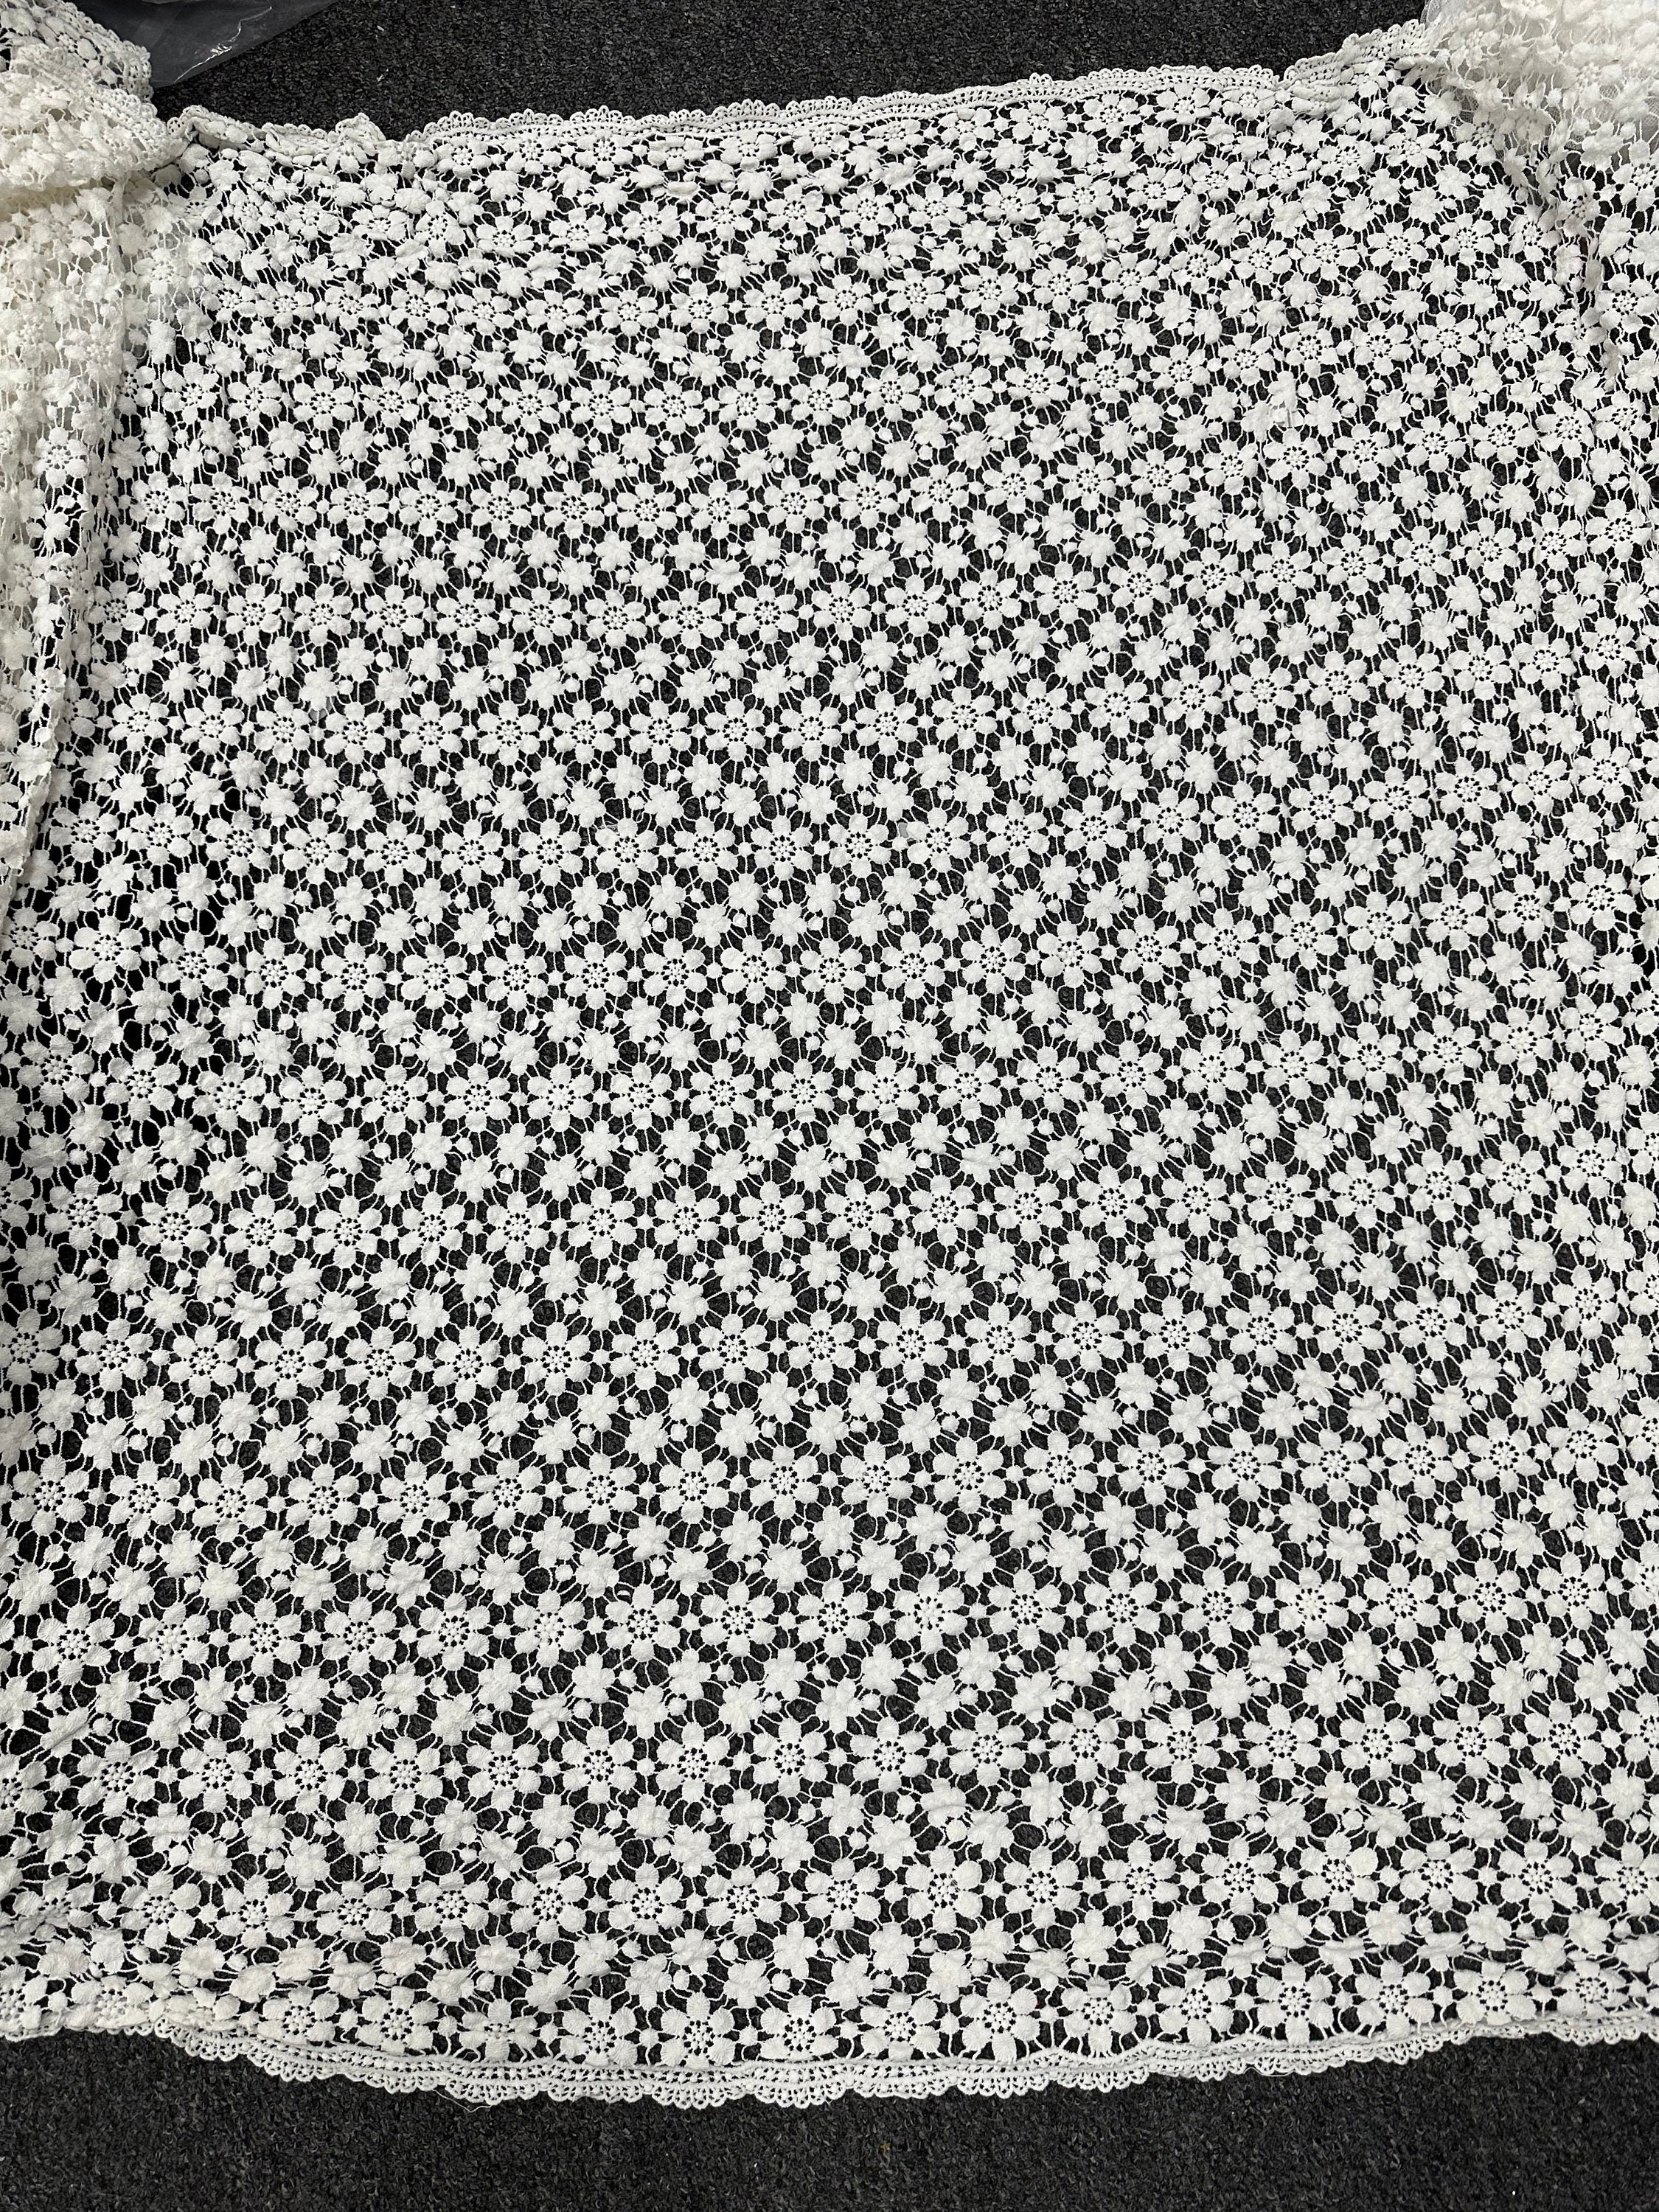 Bargin Deals On Beautful Wholesale offerwhite cotton lace fabric